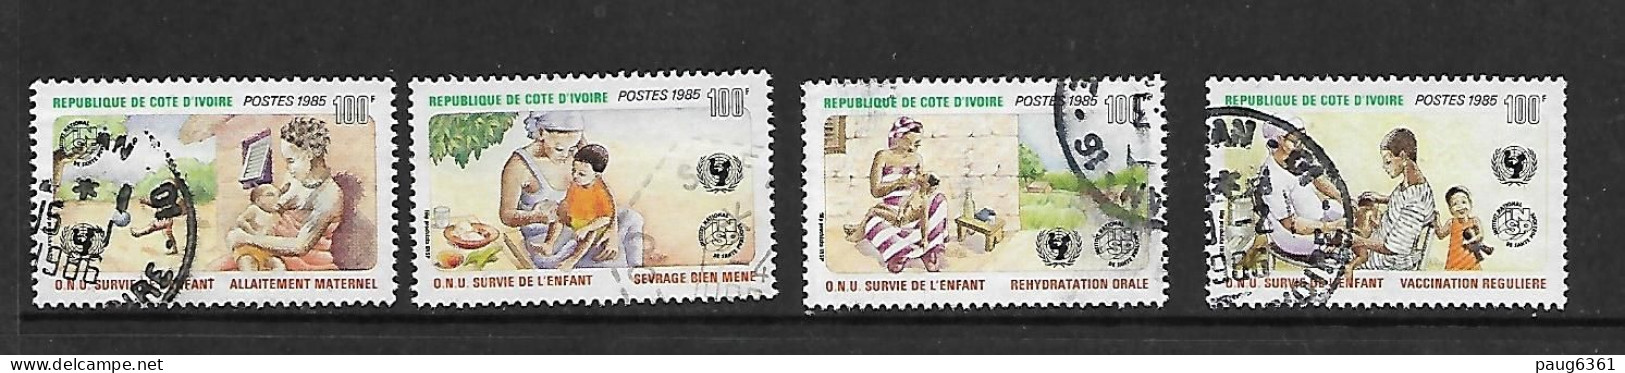 COTE D'IVOIRE 1985 CAMPAGNE POUR LA SURVIE DE L'ENFANT  YVERT N°729/732 OBLITERE - UNICEF